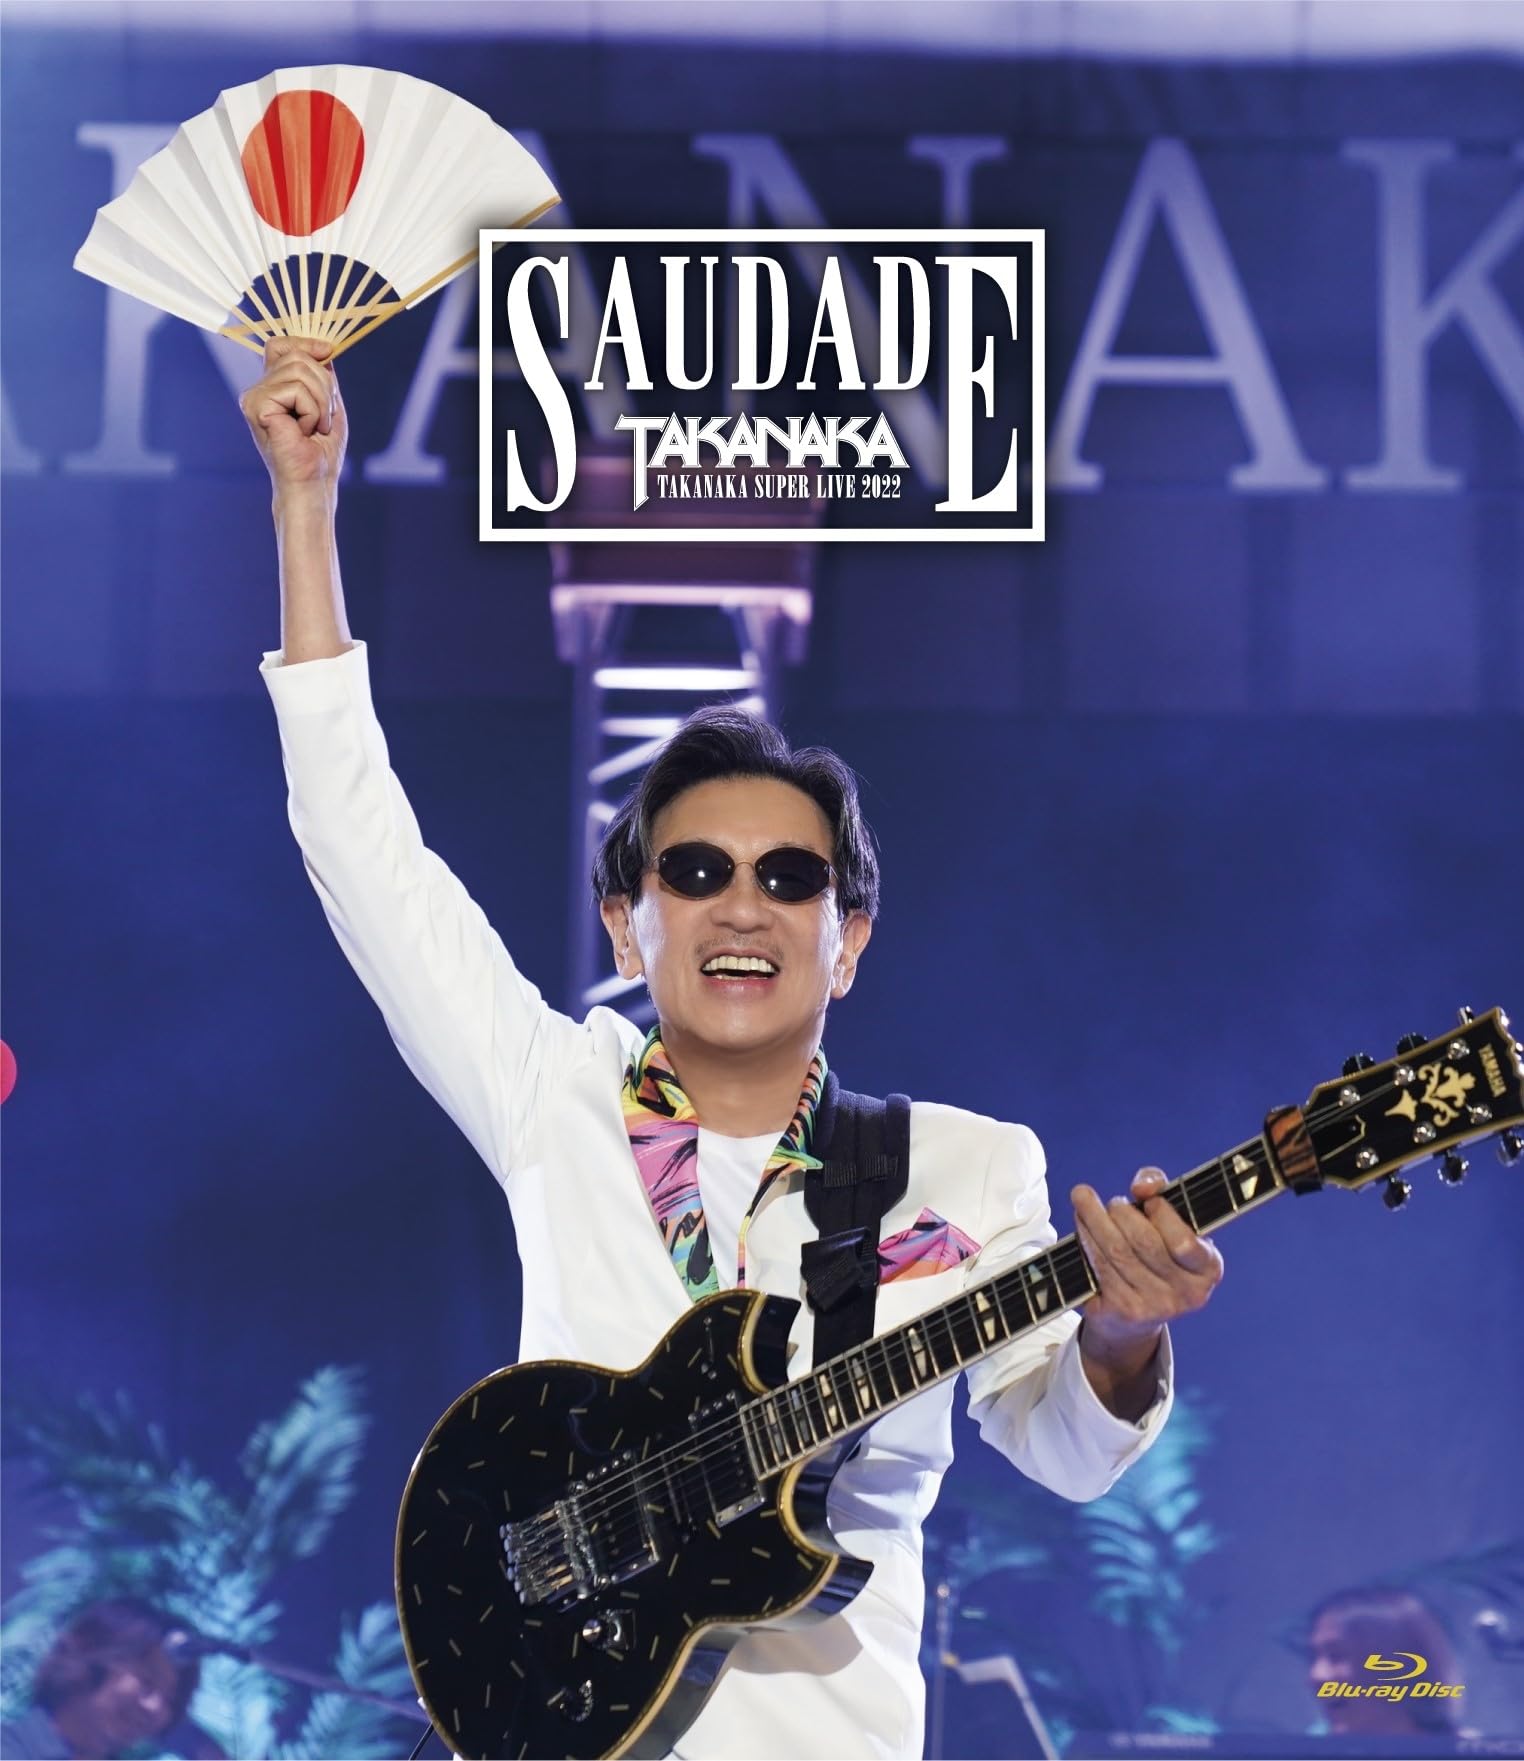 高中正義 TAKANAKA SUPER LIVE 2022 SAUDADE (初回生産限定盤) (Blu-ray) (特典なし)